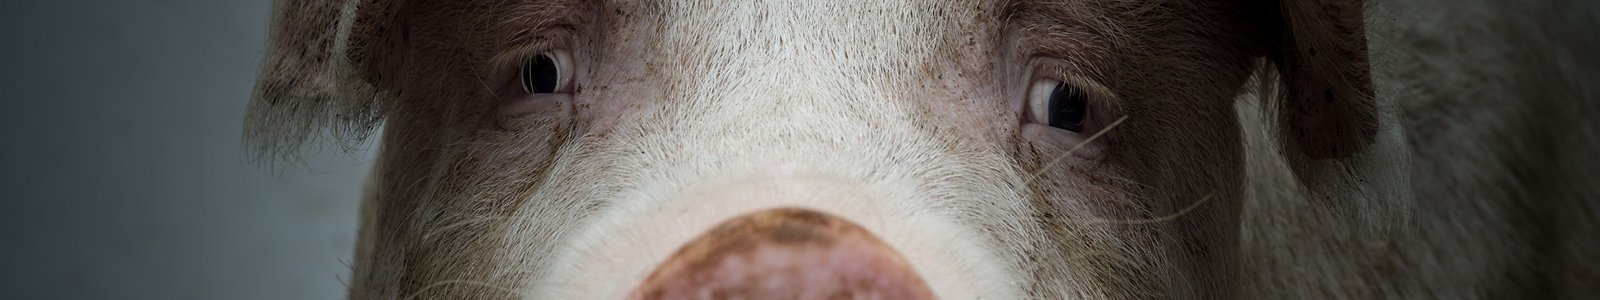 Portret van het gezicht van een varken